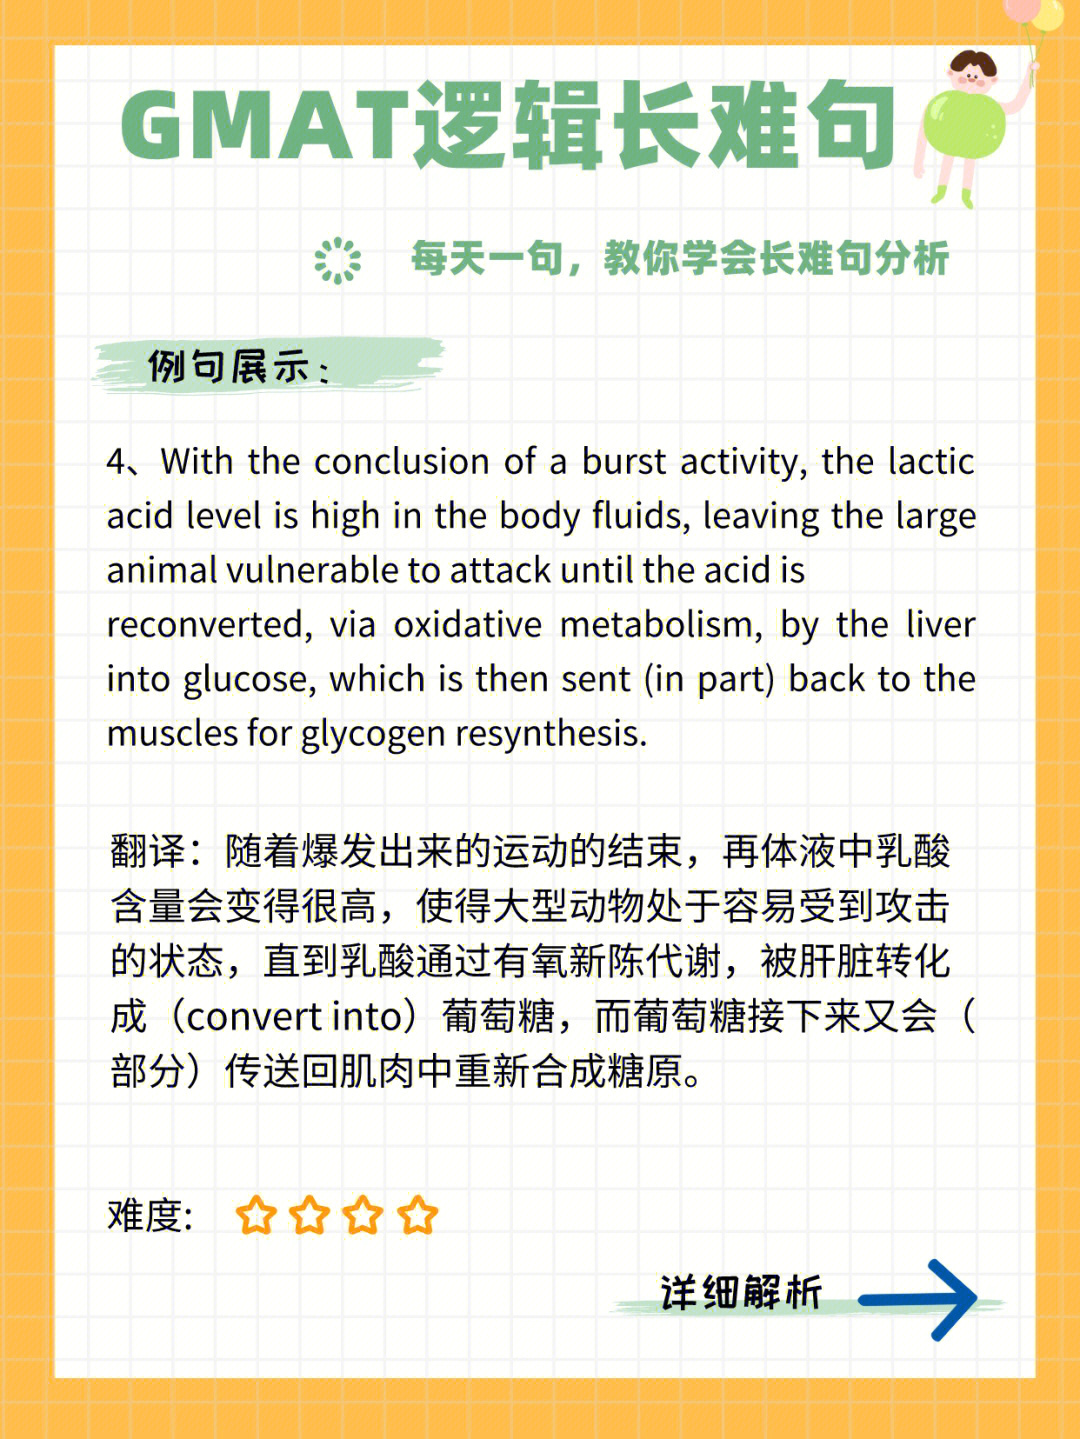 案例展示with the conclusion of a burst activity, the lactic acid